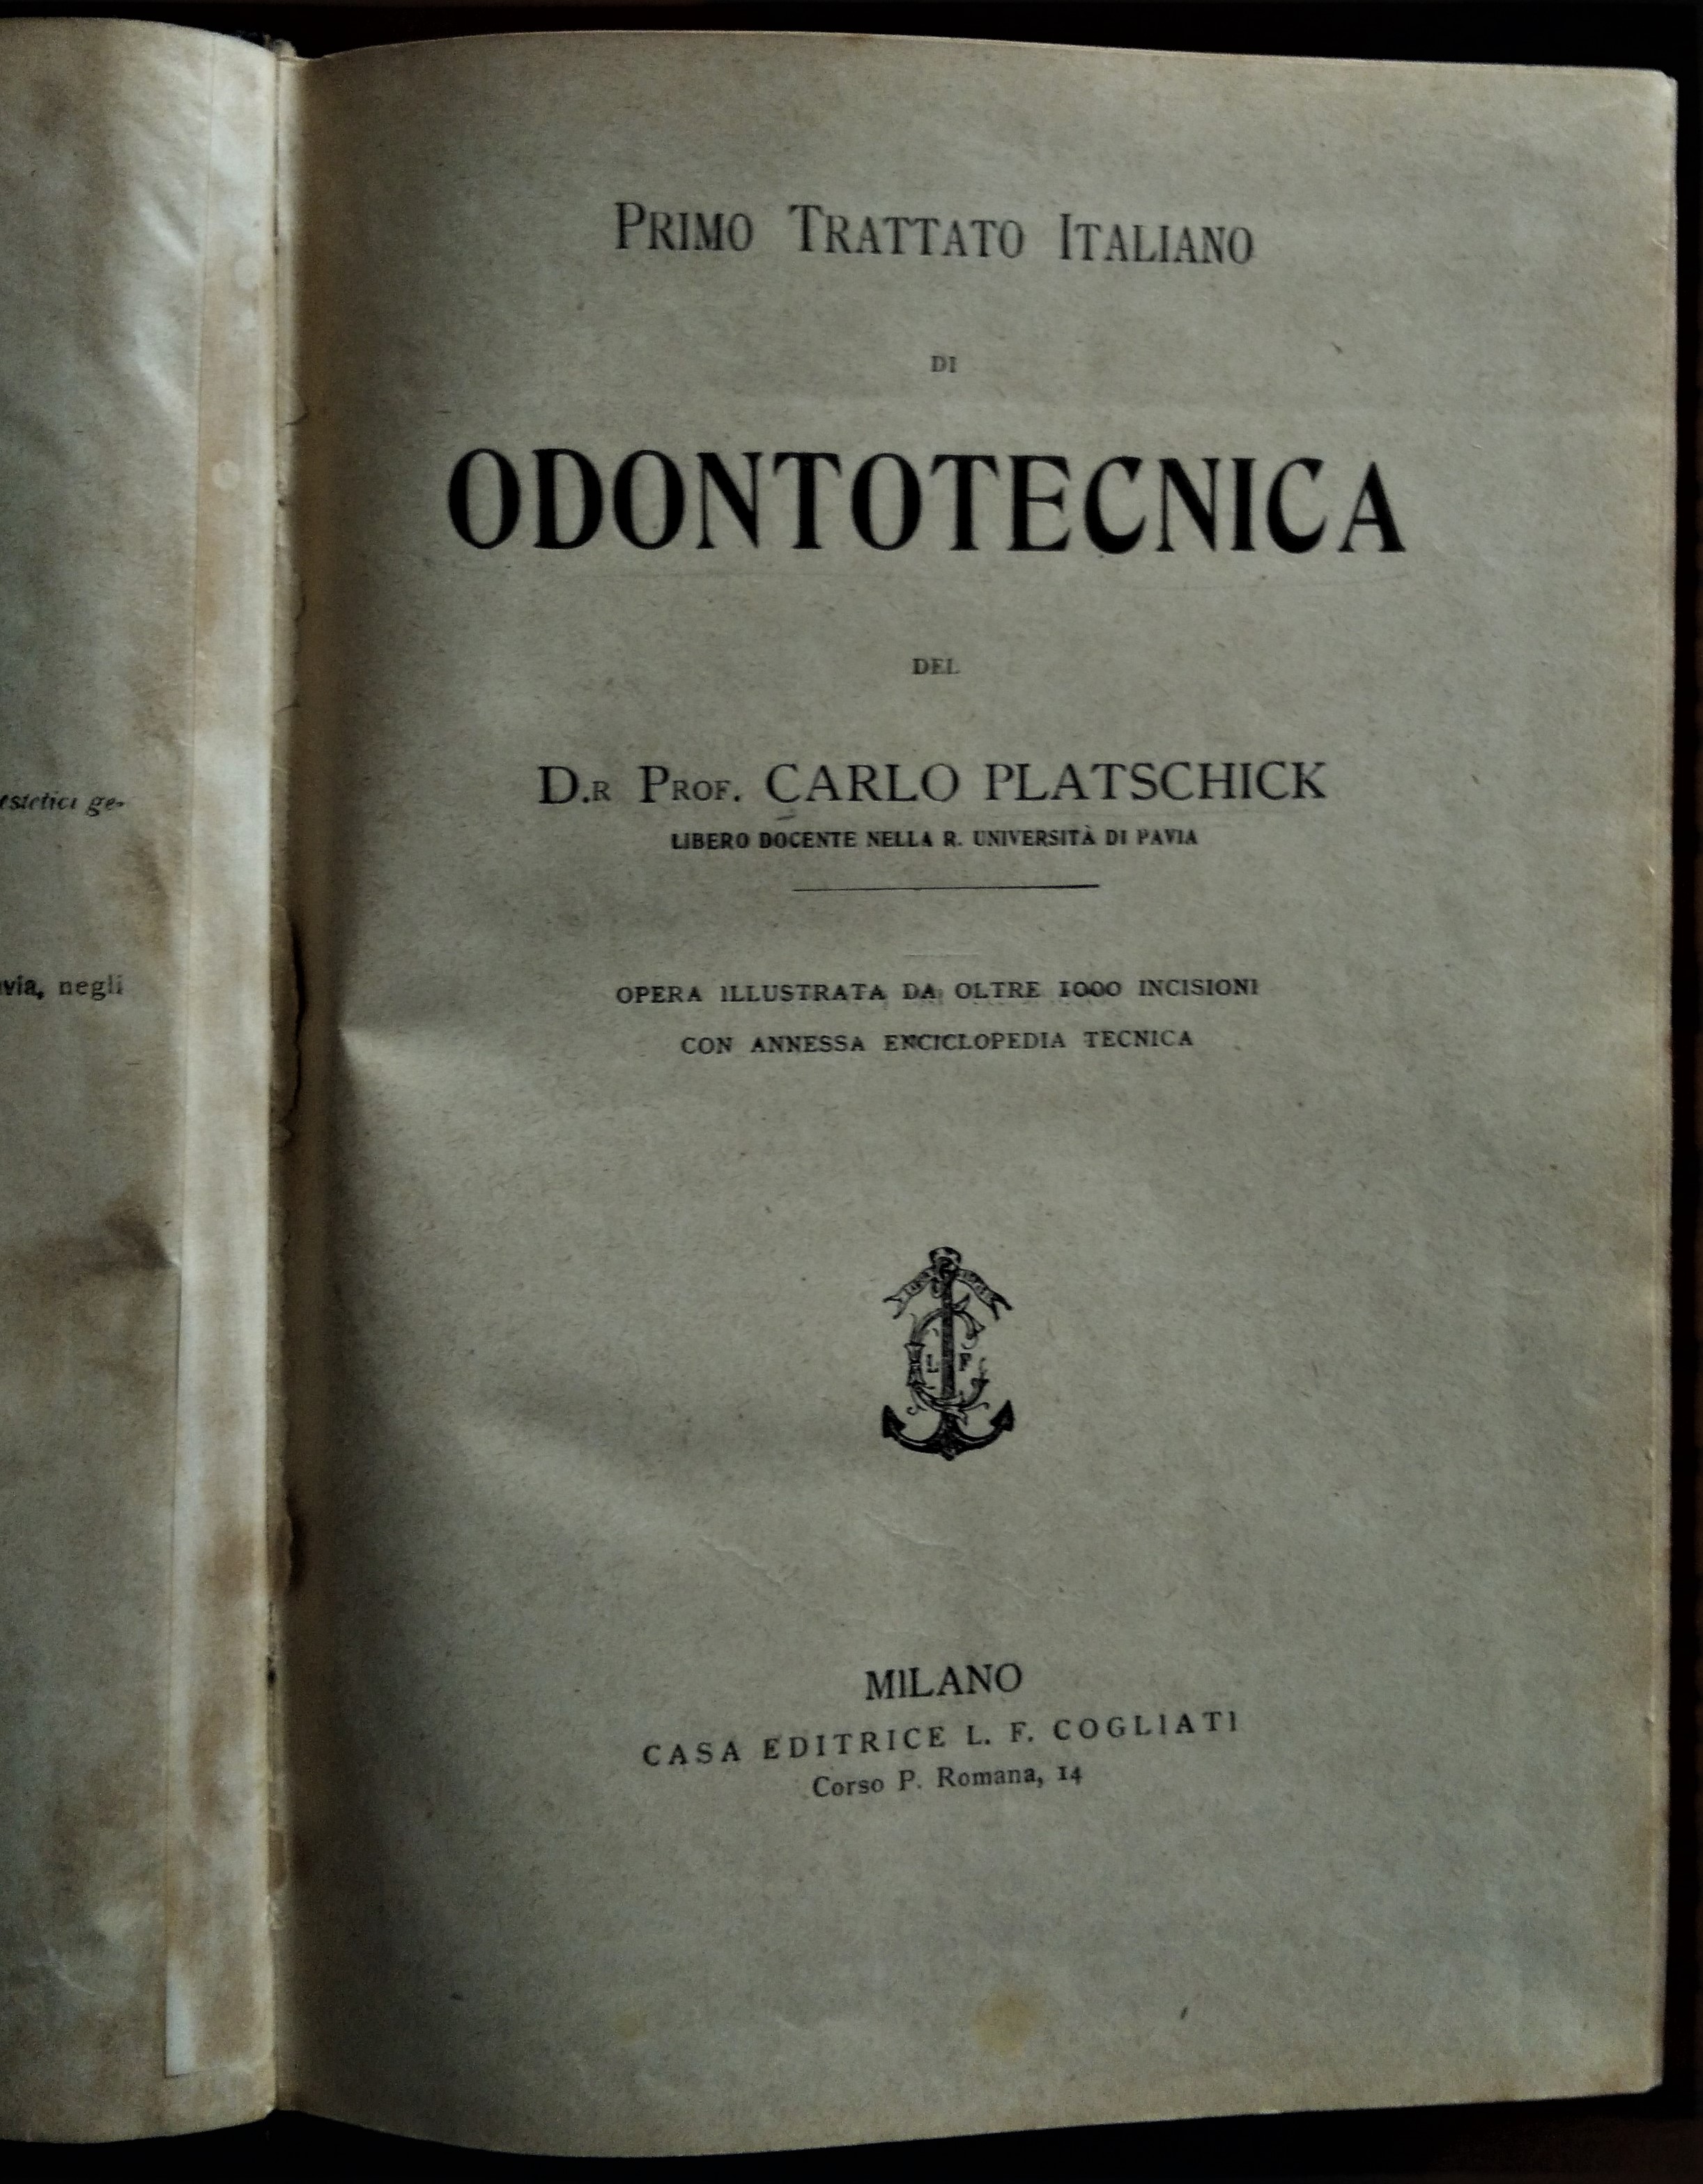 Primo Trattato Italiano di Odontotecnica.